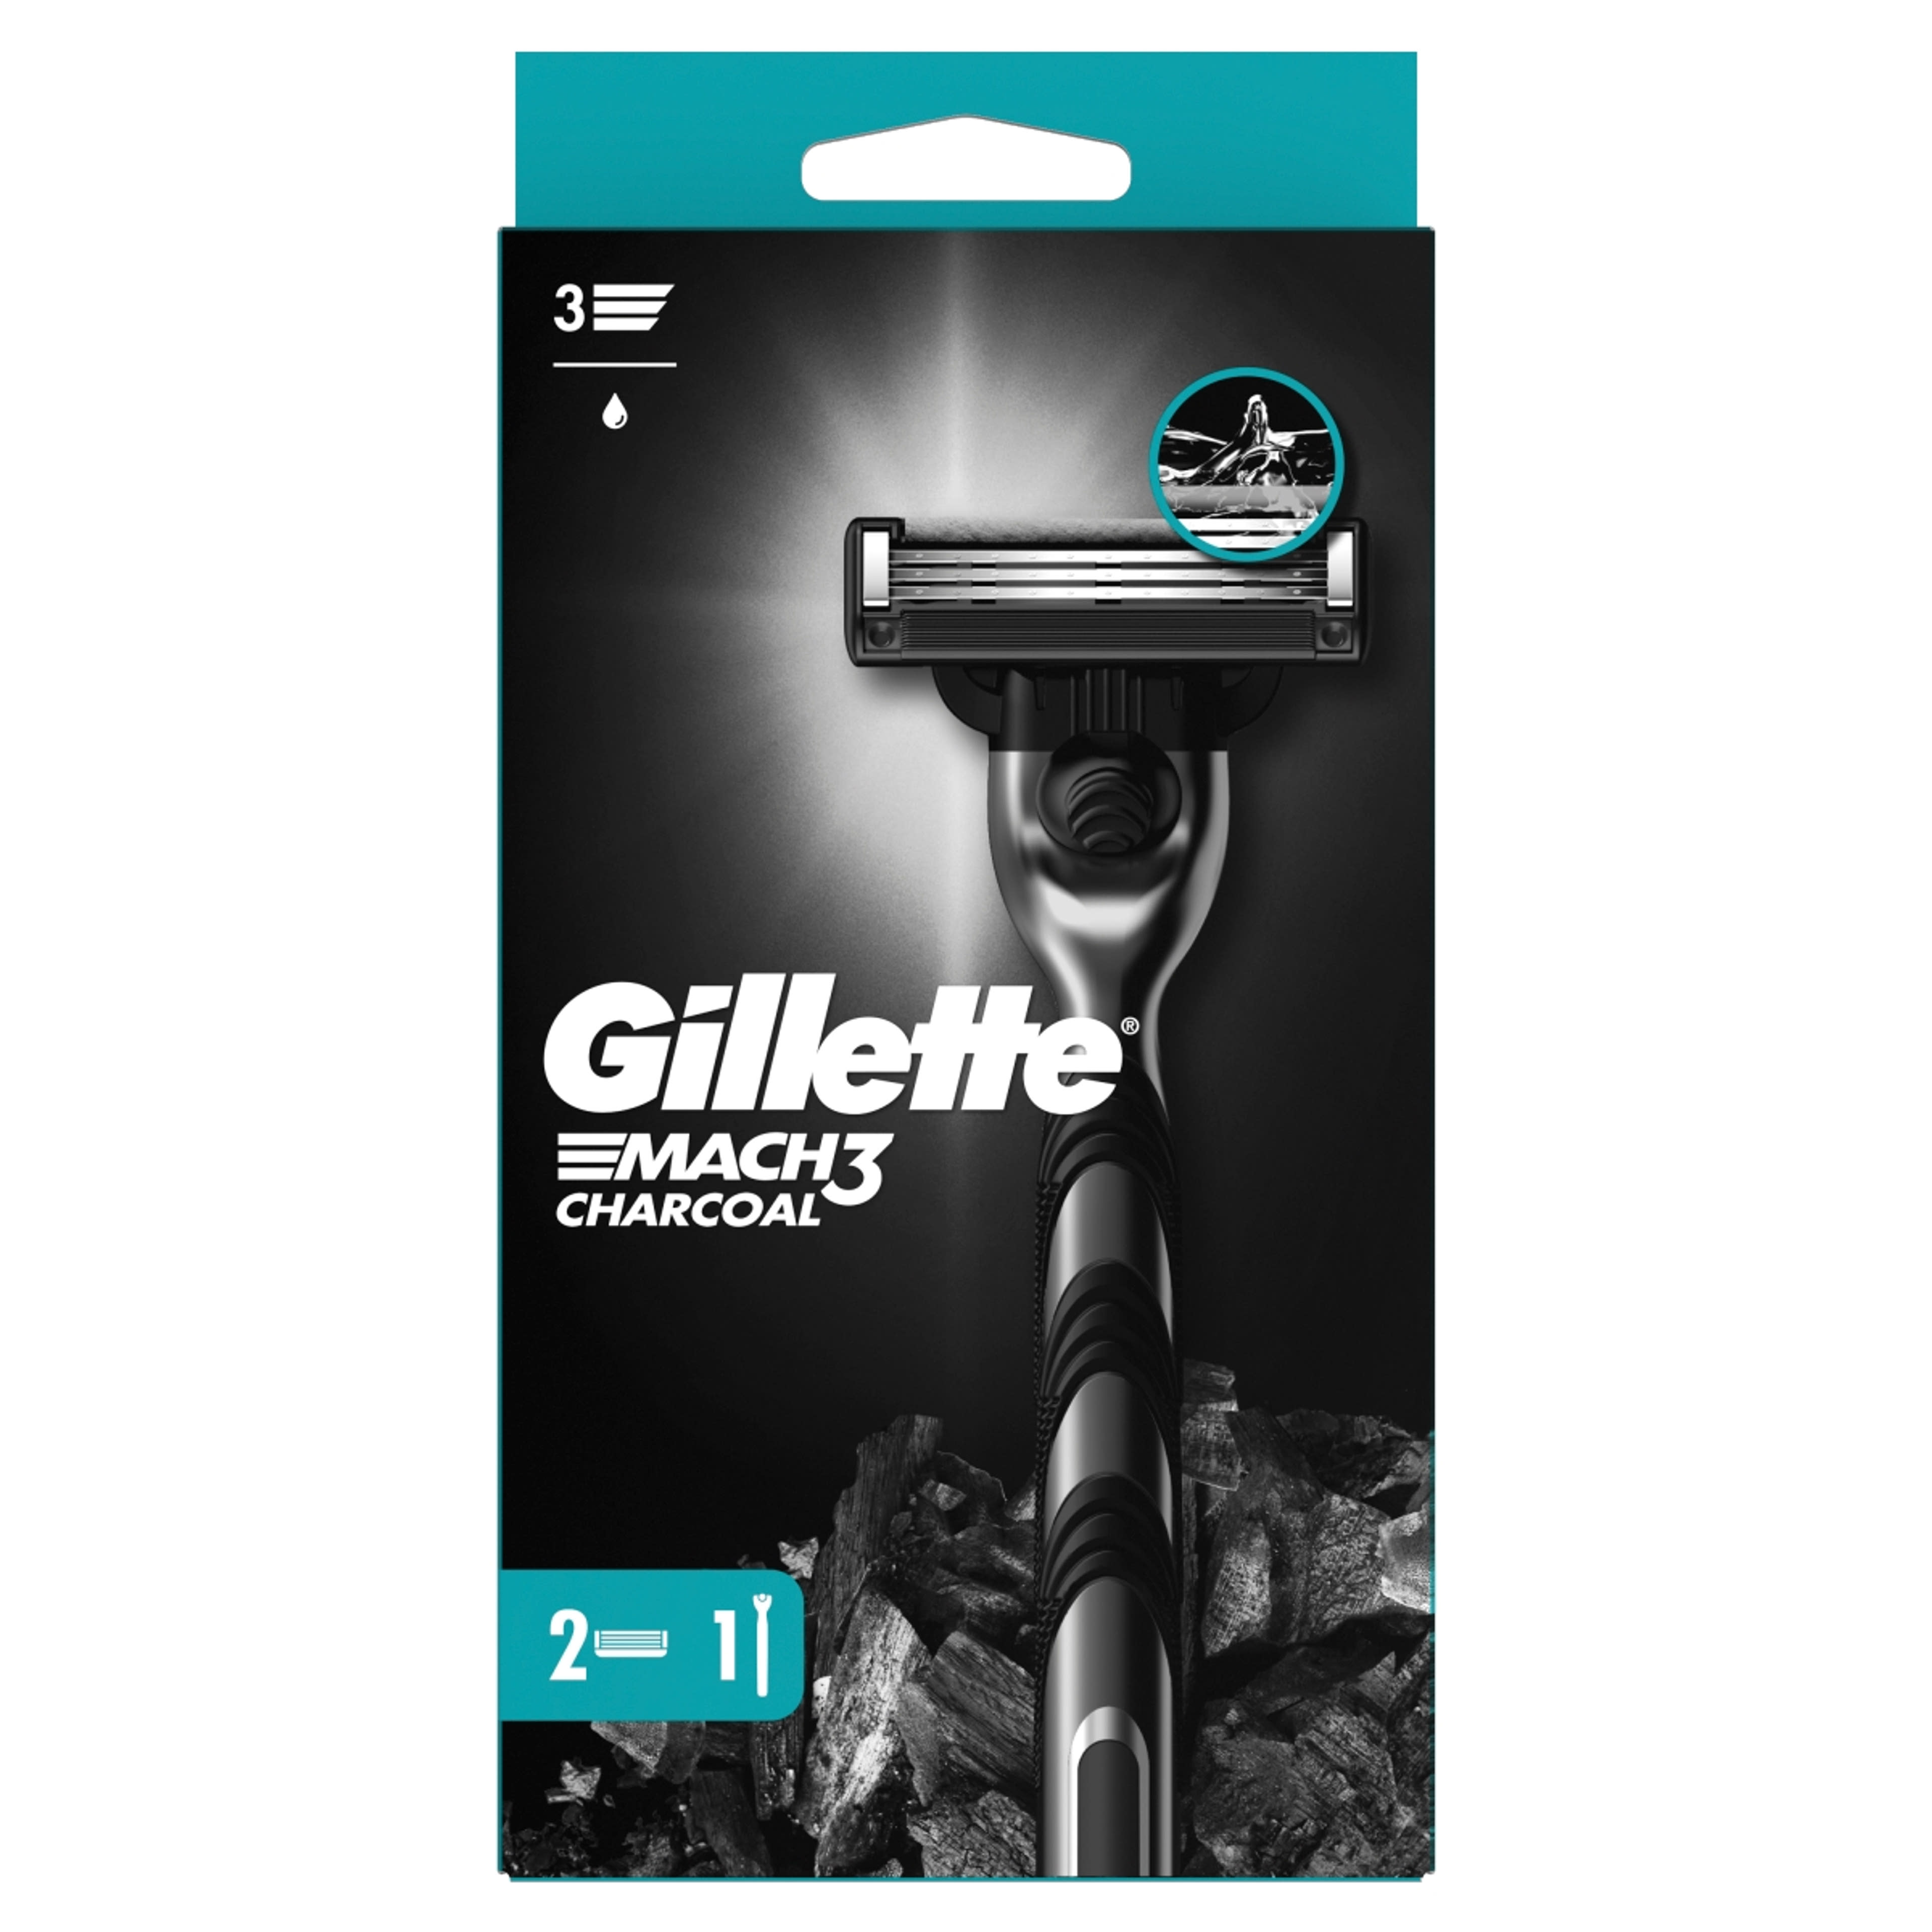 Gillette Mach3 Charcoal borotva készülék + 2 db betét - 1 db-1